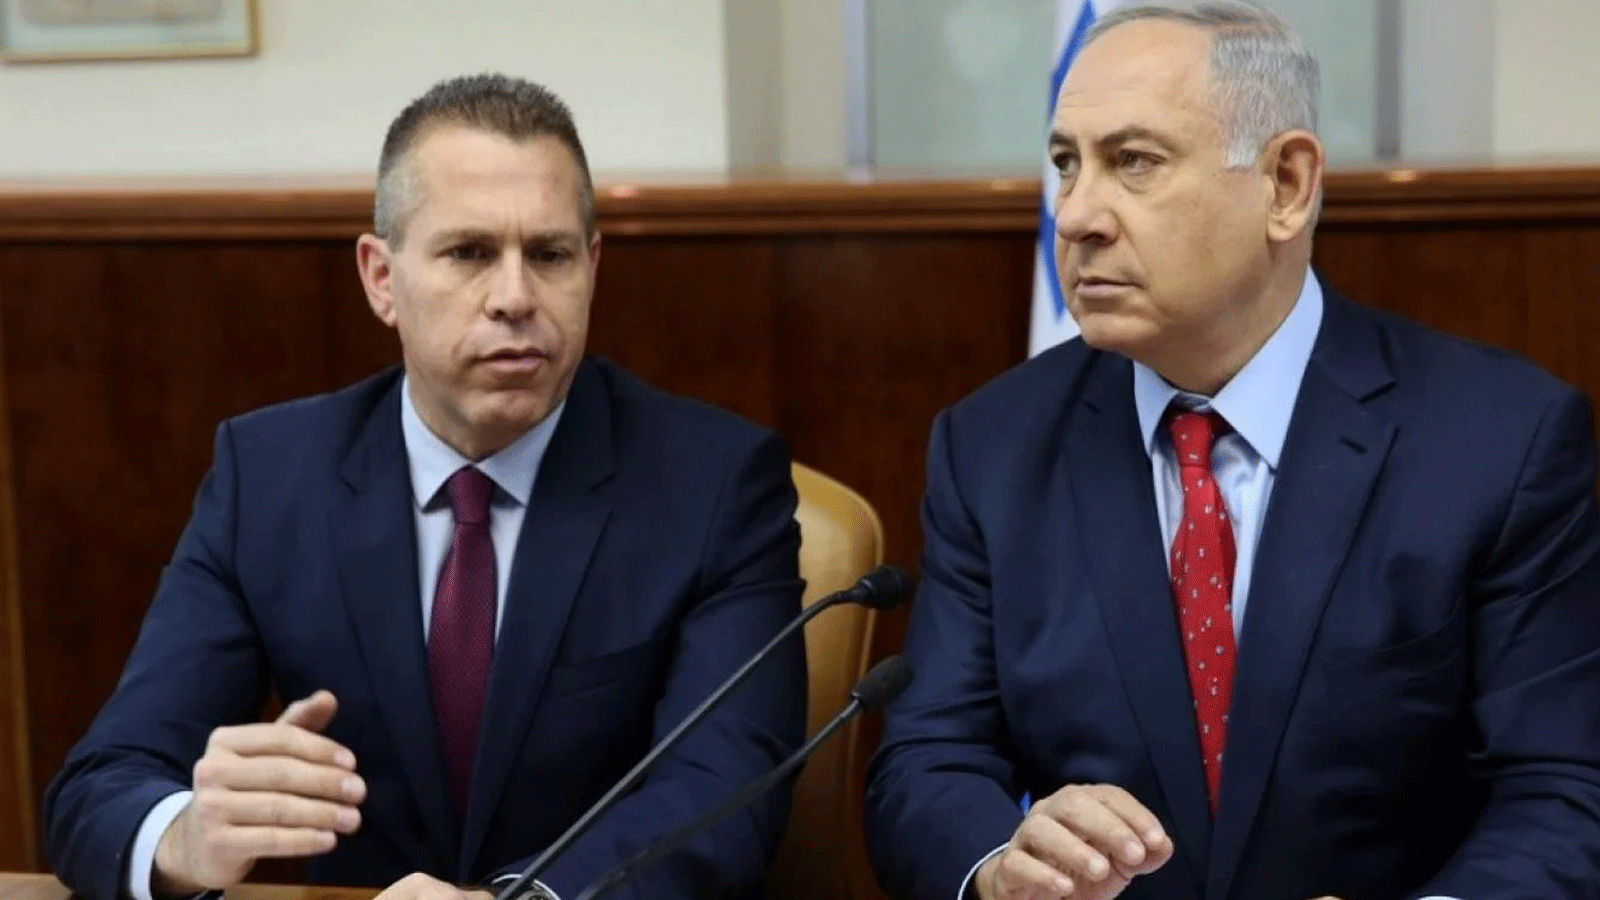 رئيس الوزراء الإسرائيلي بنيامين نتنياهو، من اليمين، وجلعاد إردان، على اليسار، المبعوث الإسرائيلي لدى الأمم المتحدة والولايات المتحدة